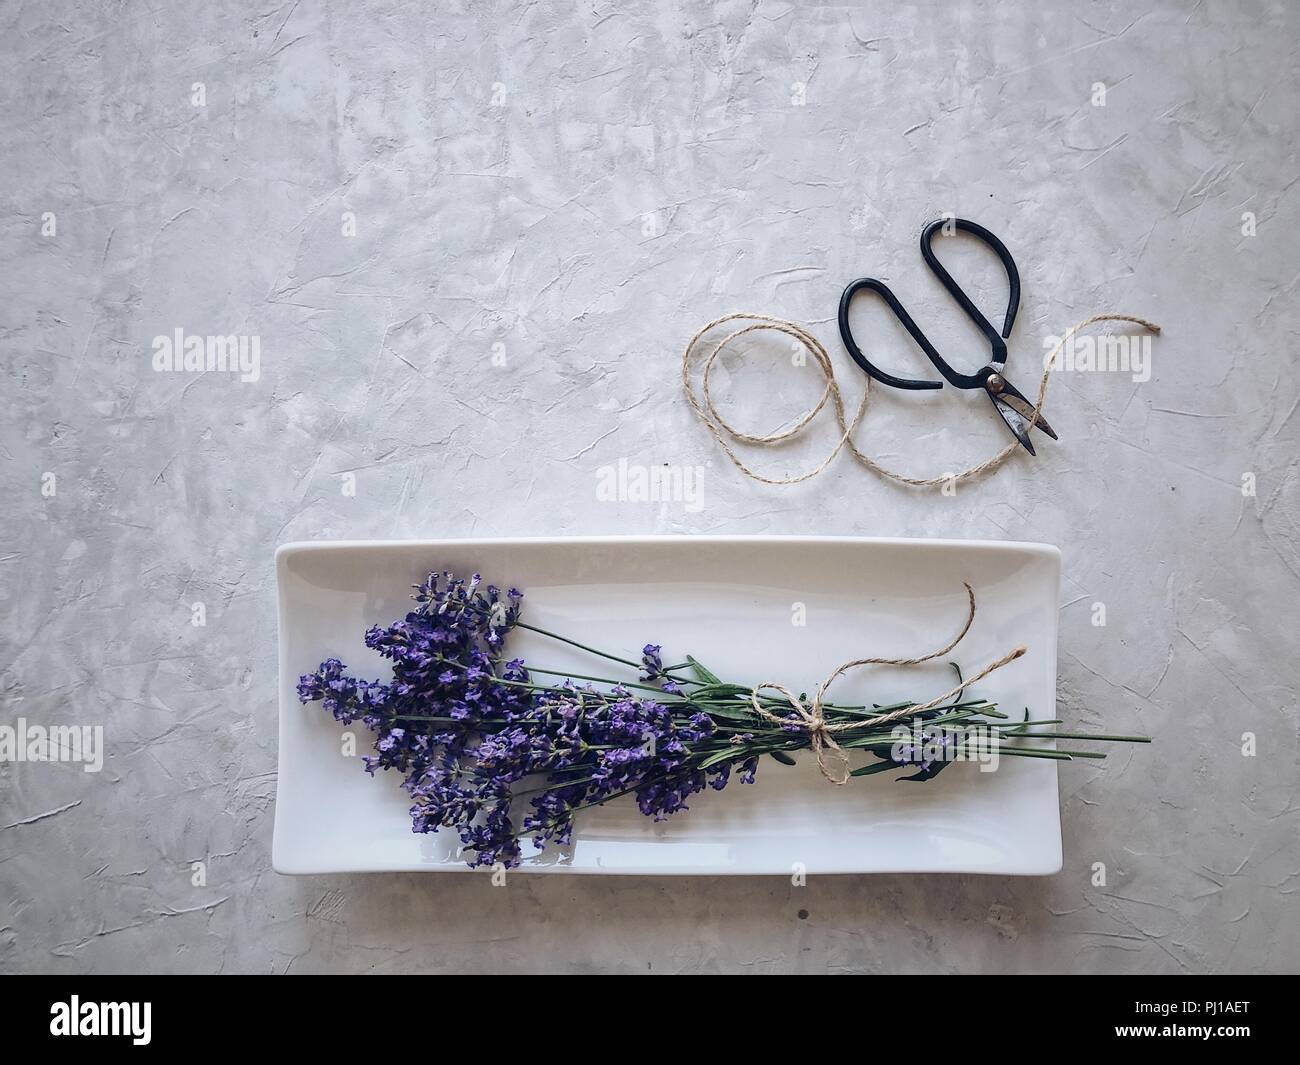 Lavendel auf einem Teller mit string und Schere Stockfoto